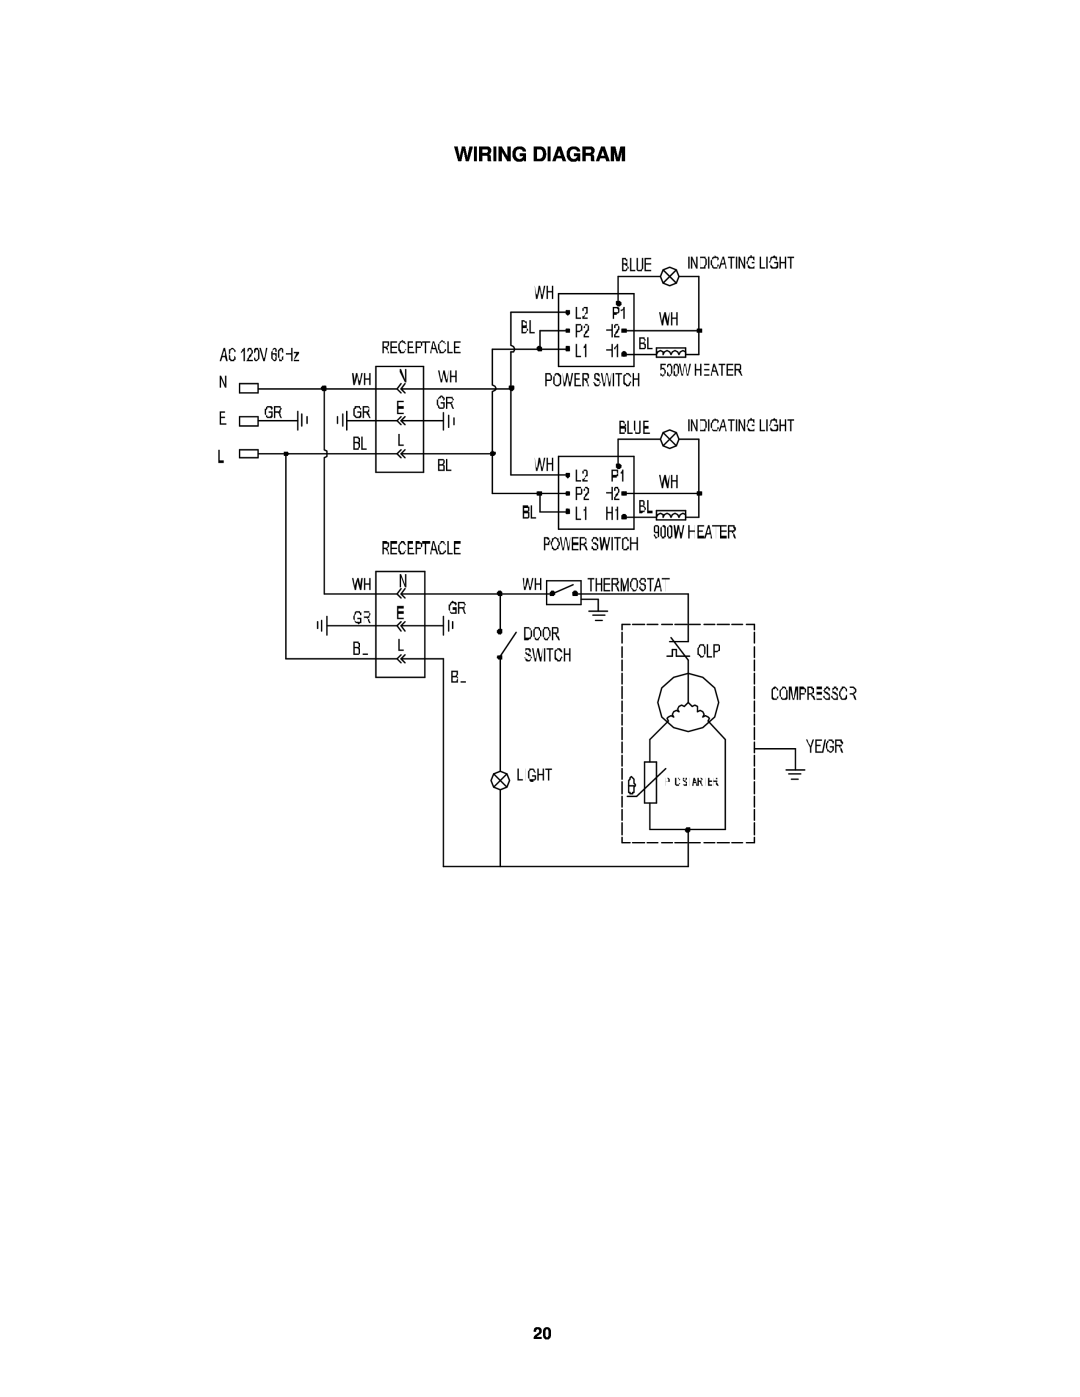 Avanti CK30-1, CK30-B instruction manual Wiring Diagram 